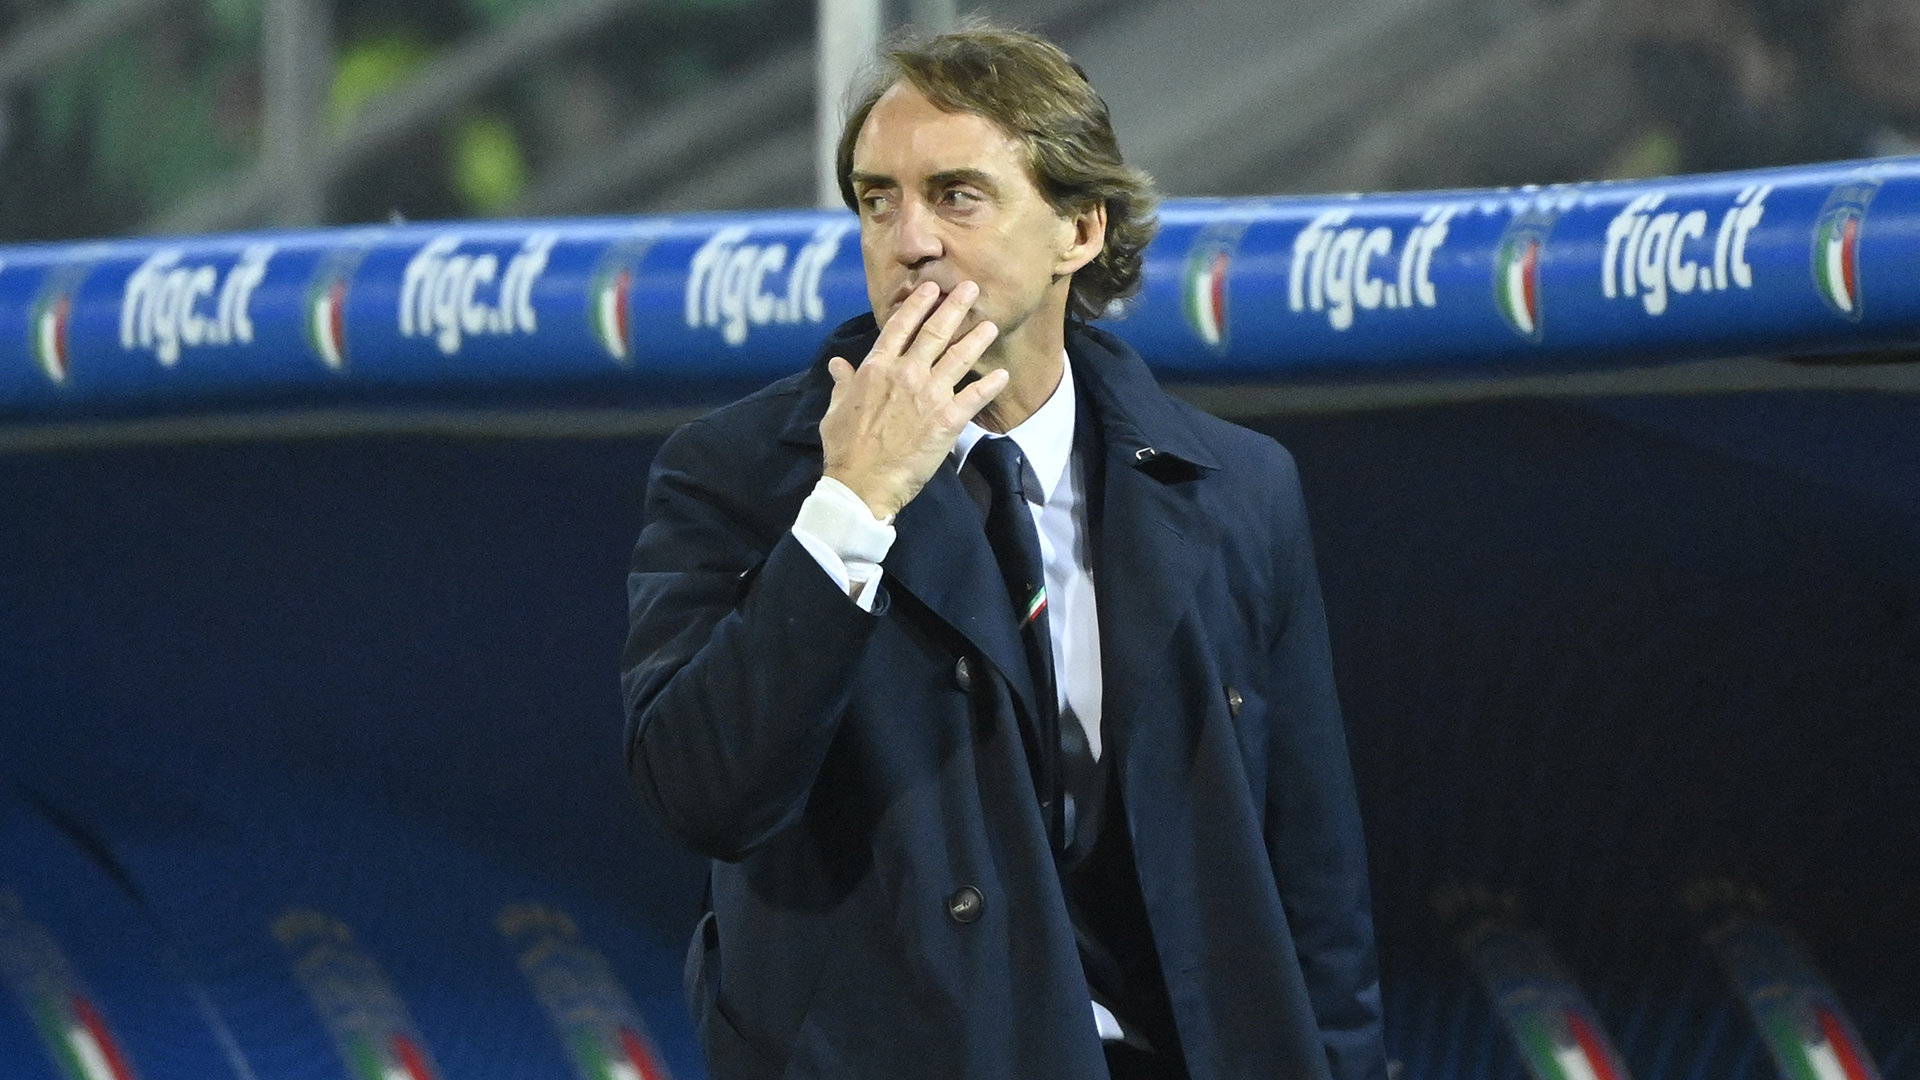 Il futuro di Roberto Mancini in dubbio dopo l'eliminazione (AFP)